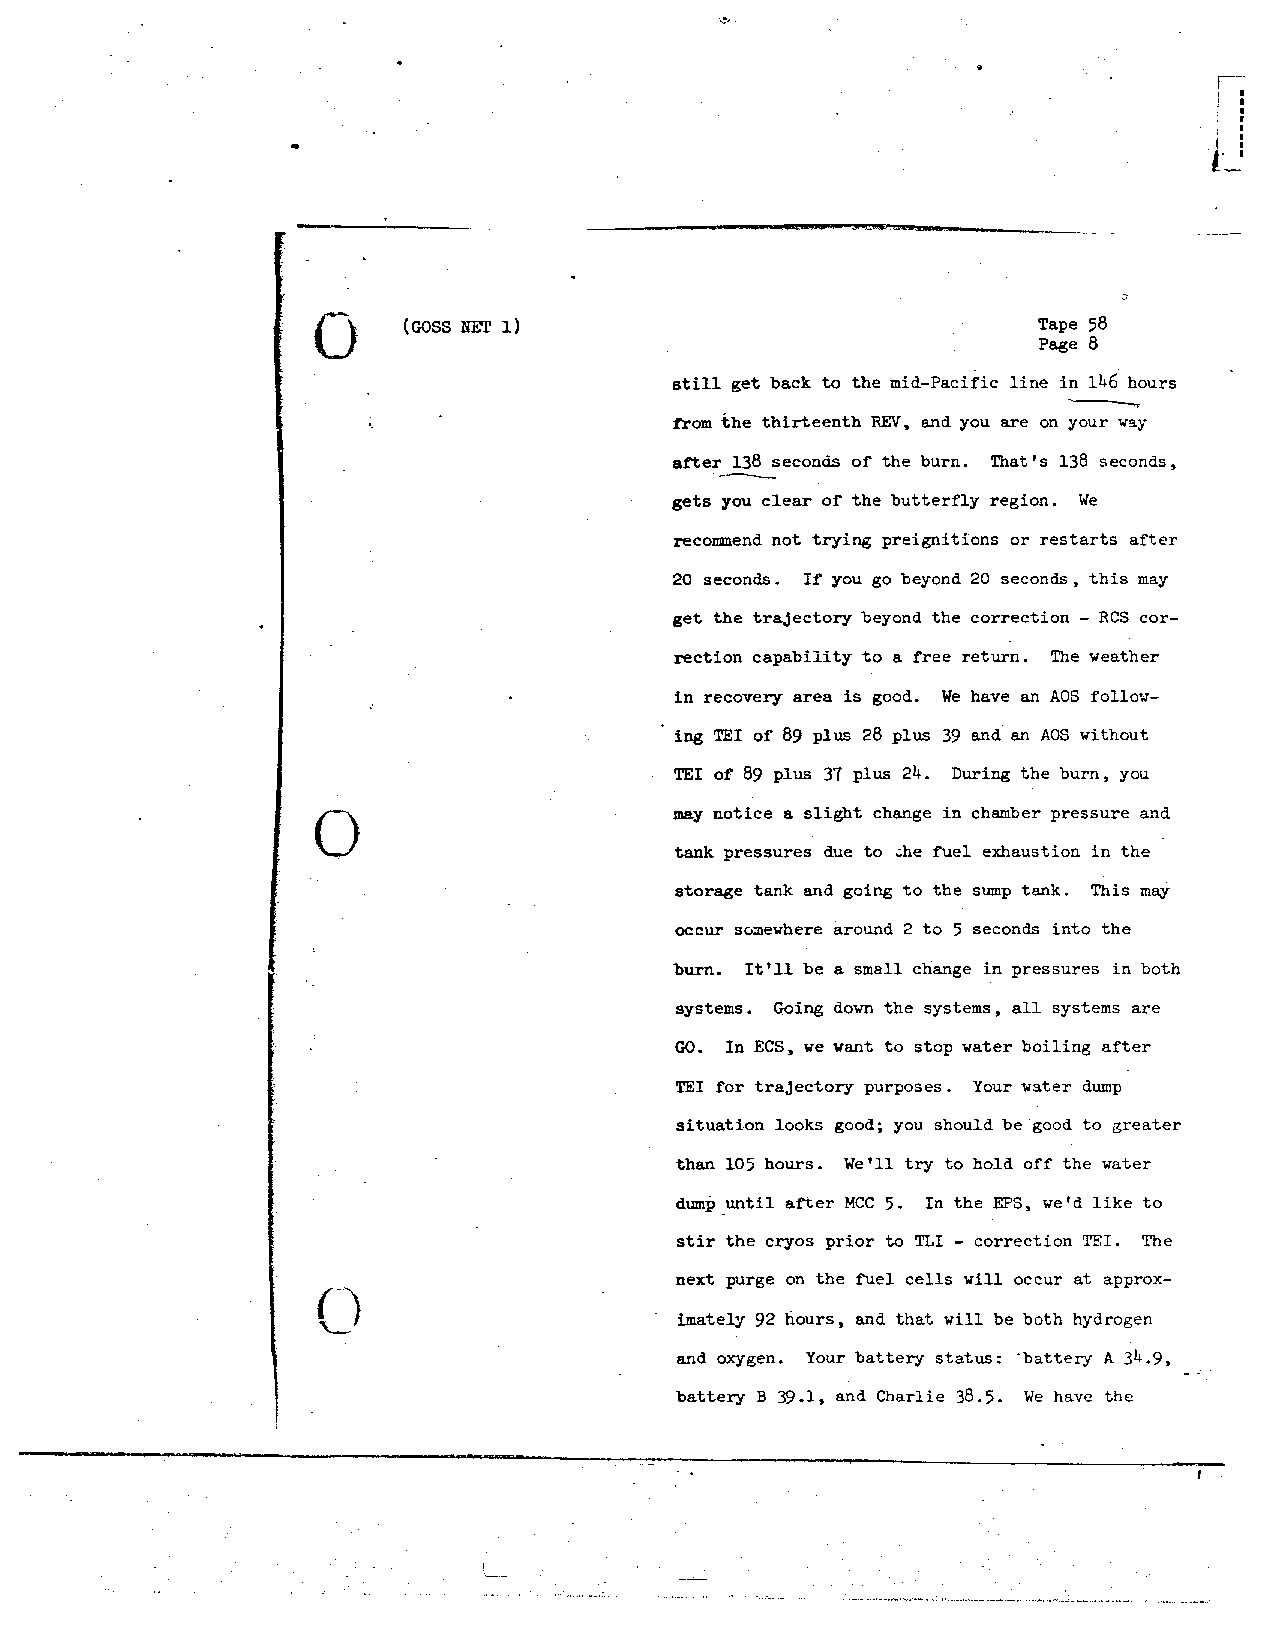 Page 467 of Apollo 8’s original transcript